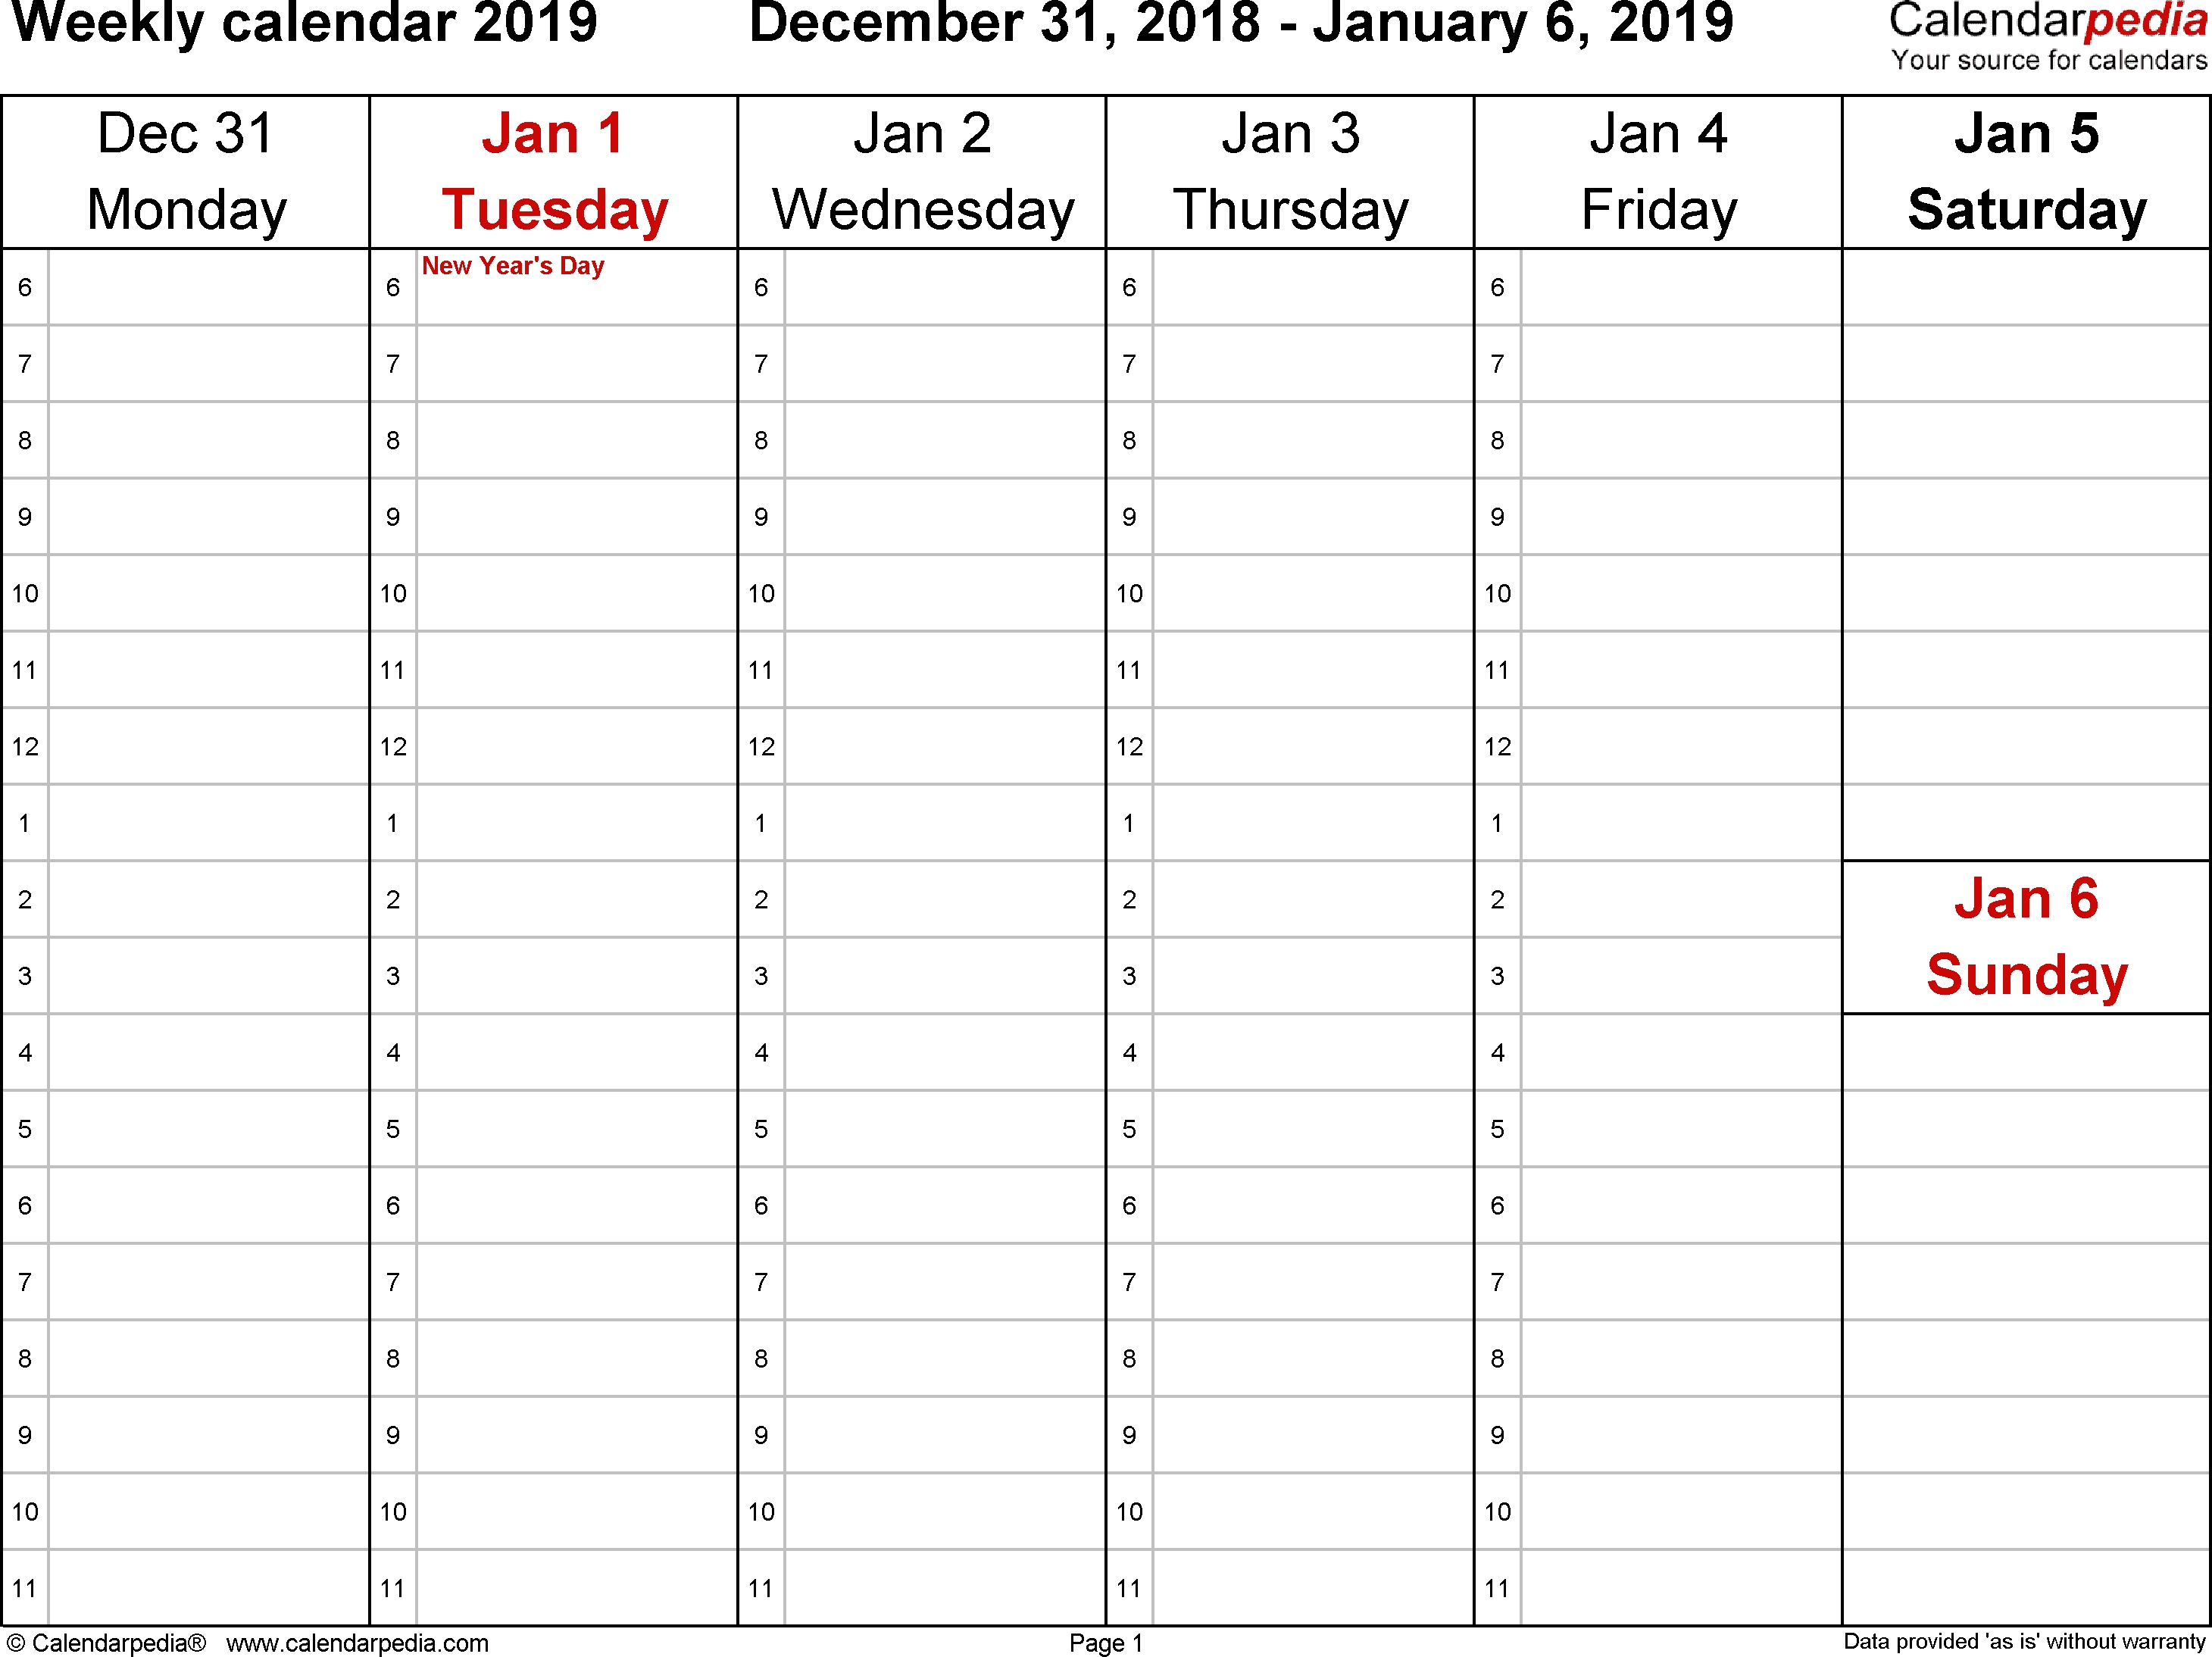 Weekly Calendar 2019 For Word - 12 Free Printable Templates Perky Blank Calendar 4 Week Template